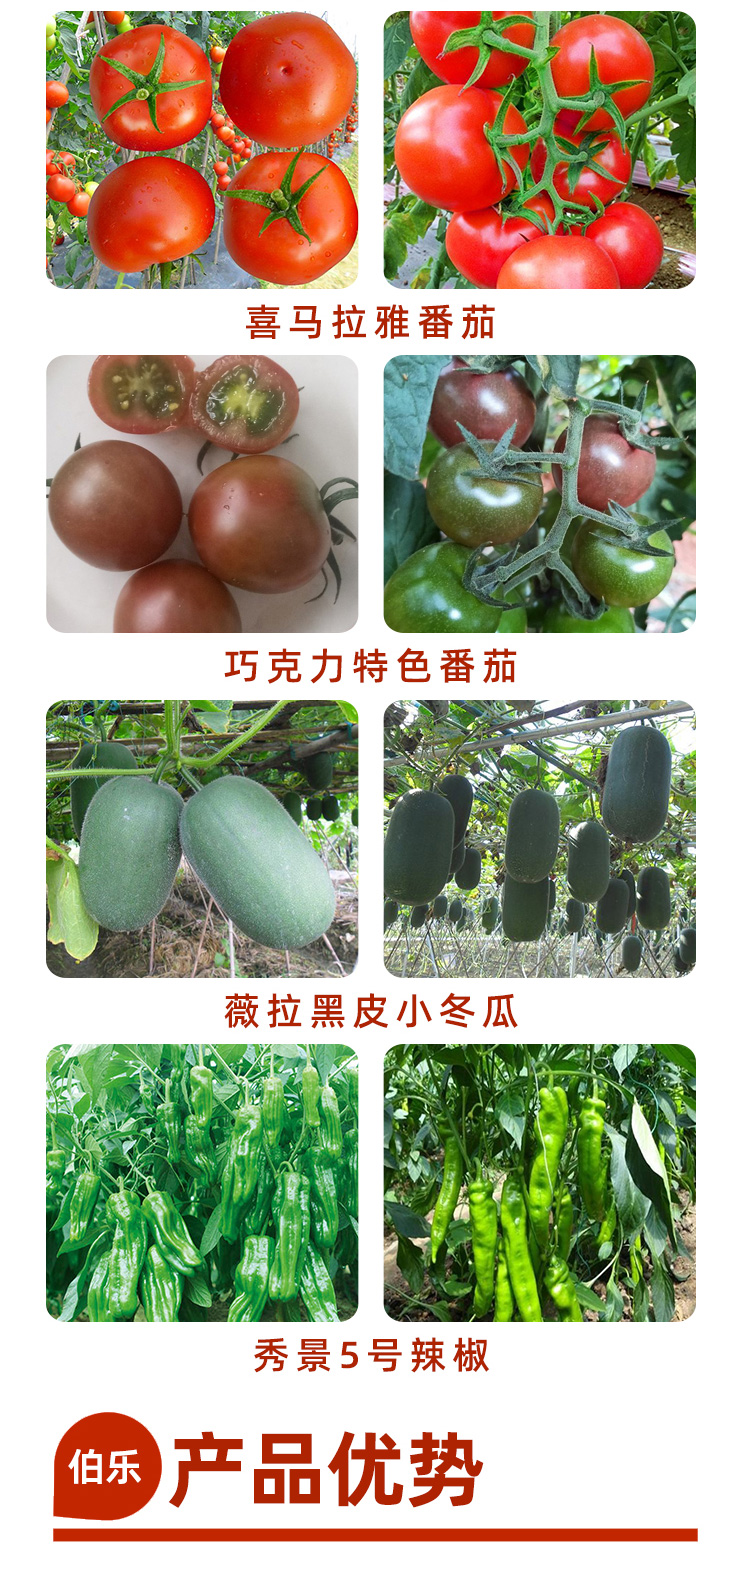 0806广西伯乐农业科技有限公司(1)_03.jpg